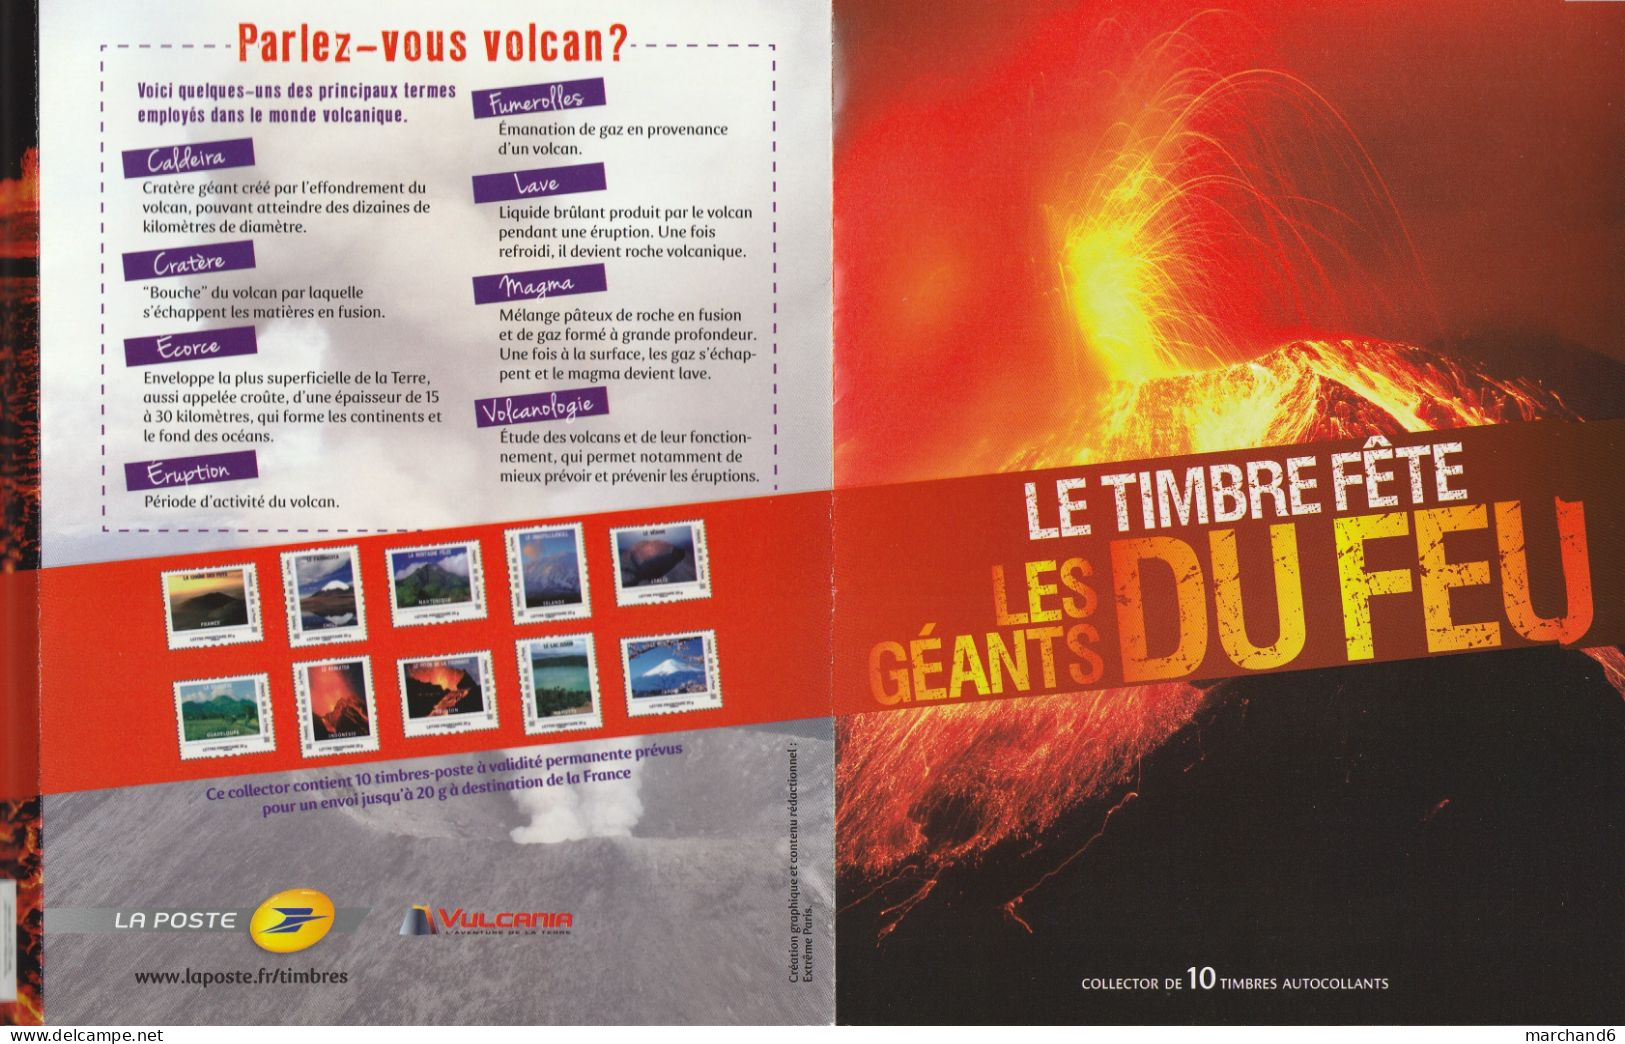 Feuillet Collector Le Timbre Fete Les Génats Du Feu Volcan France 2012 IDT L P 20gr 10 Timbres Autoadhésifs N°176 - Collectors